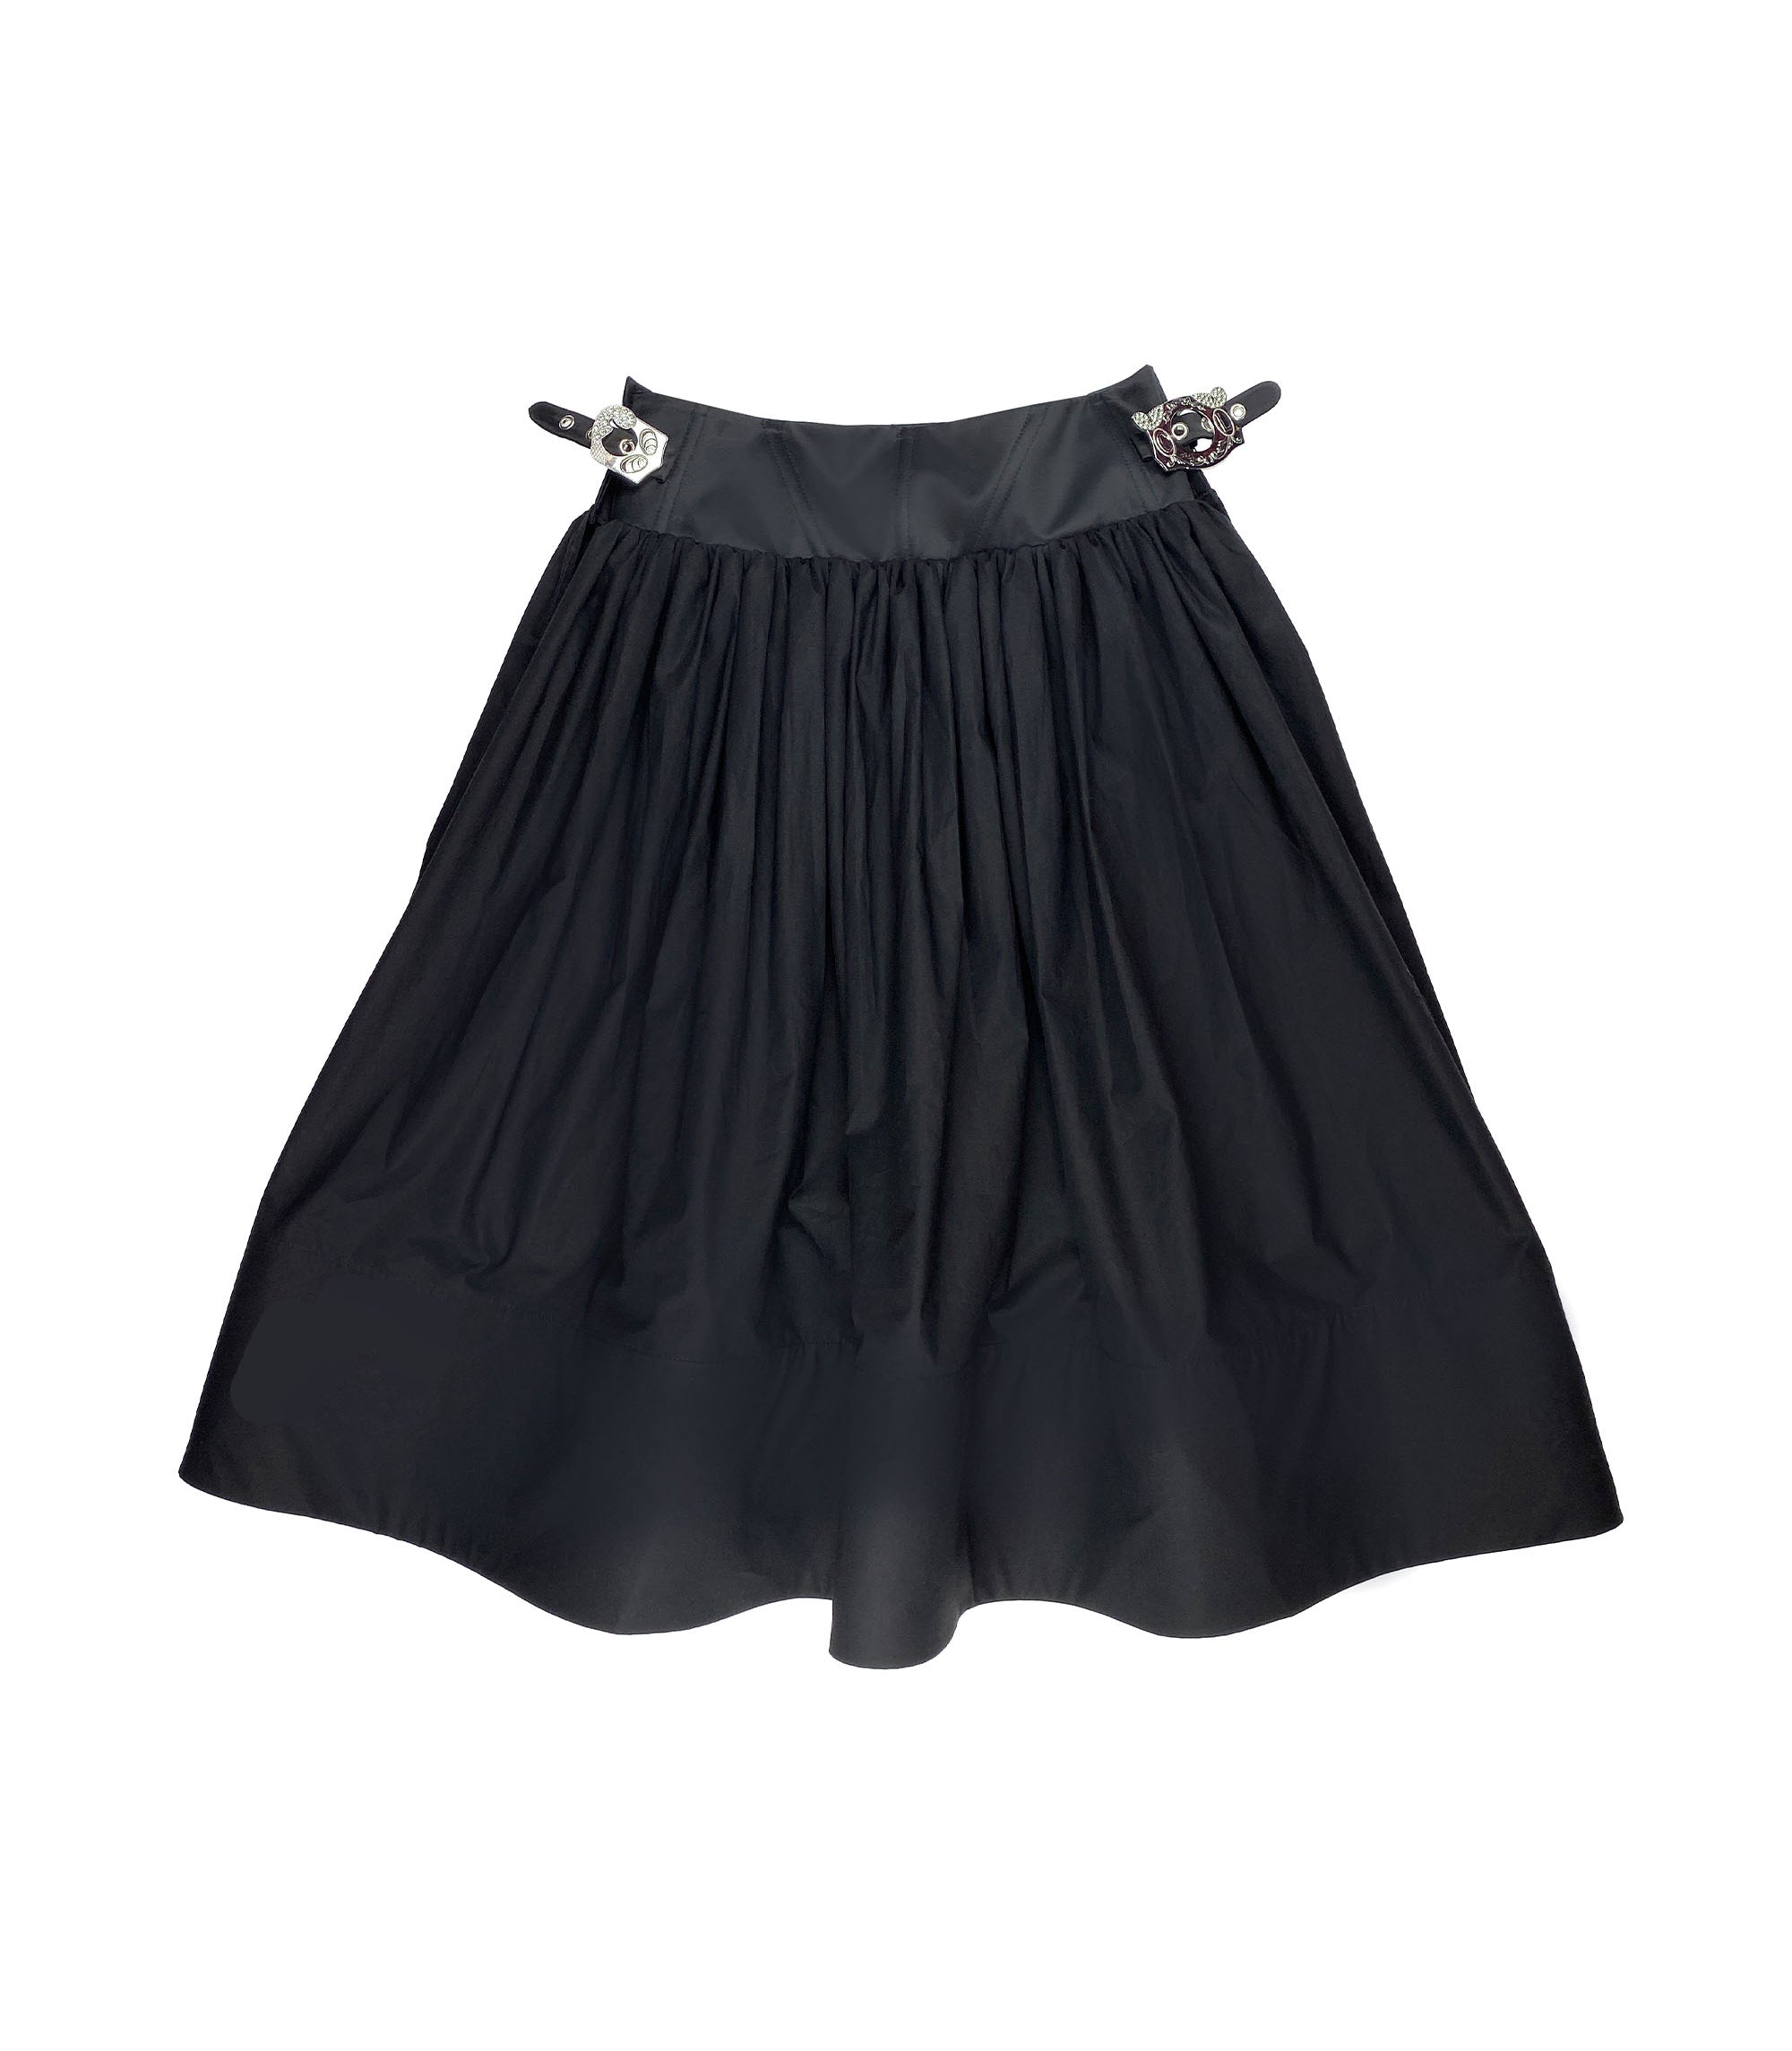 Foray Skirt - Black / Black